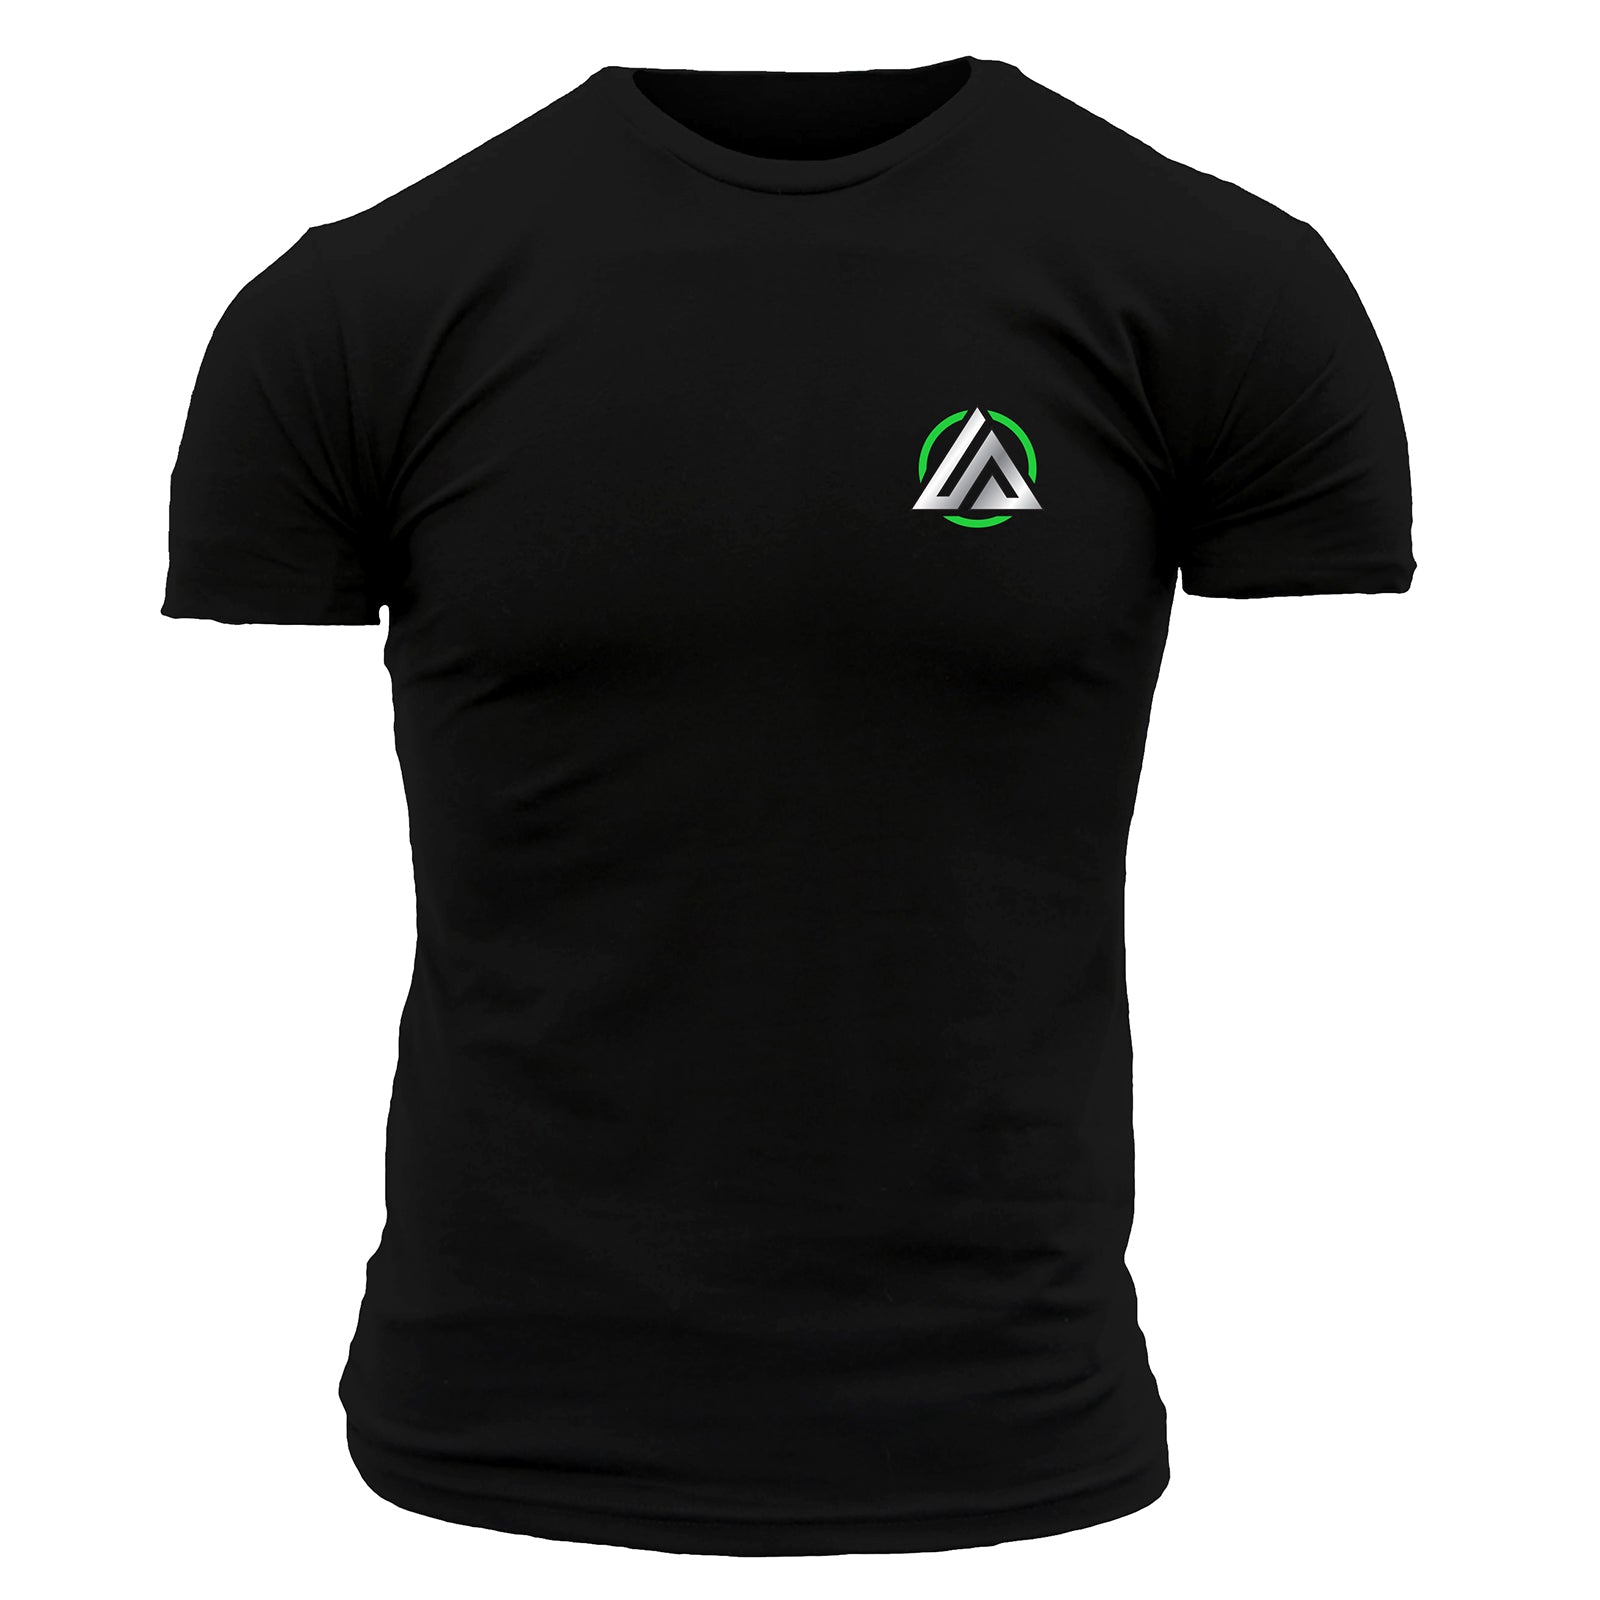 LitezAll Folks T-Shirt - LitezAll - Apparel - 1